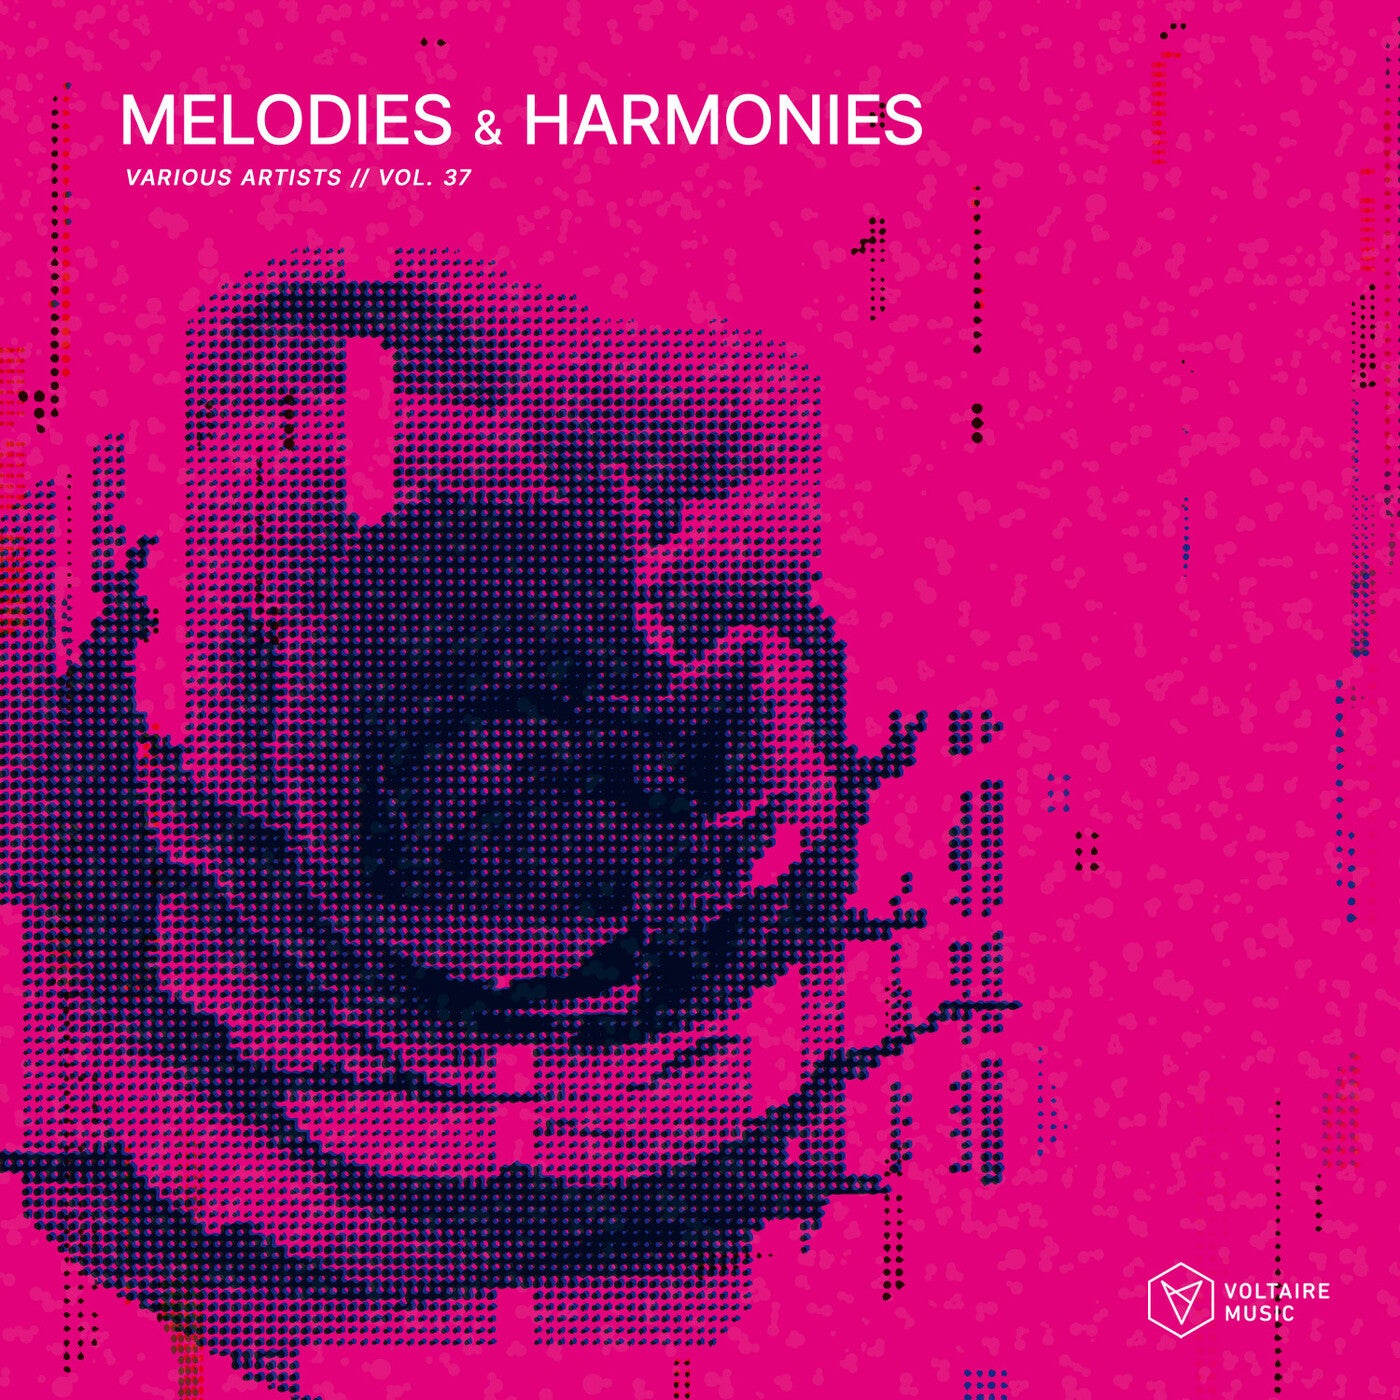 Melodies & Harmonies Vol. 37